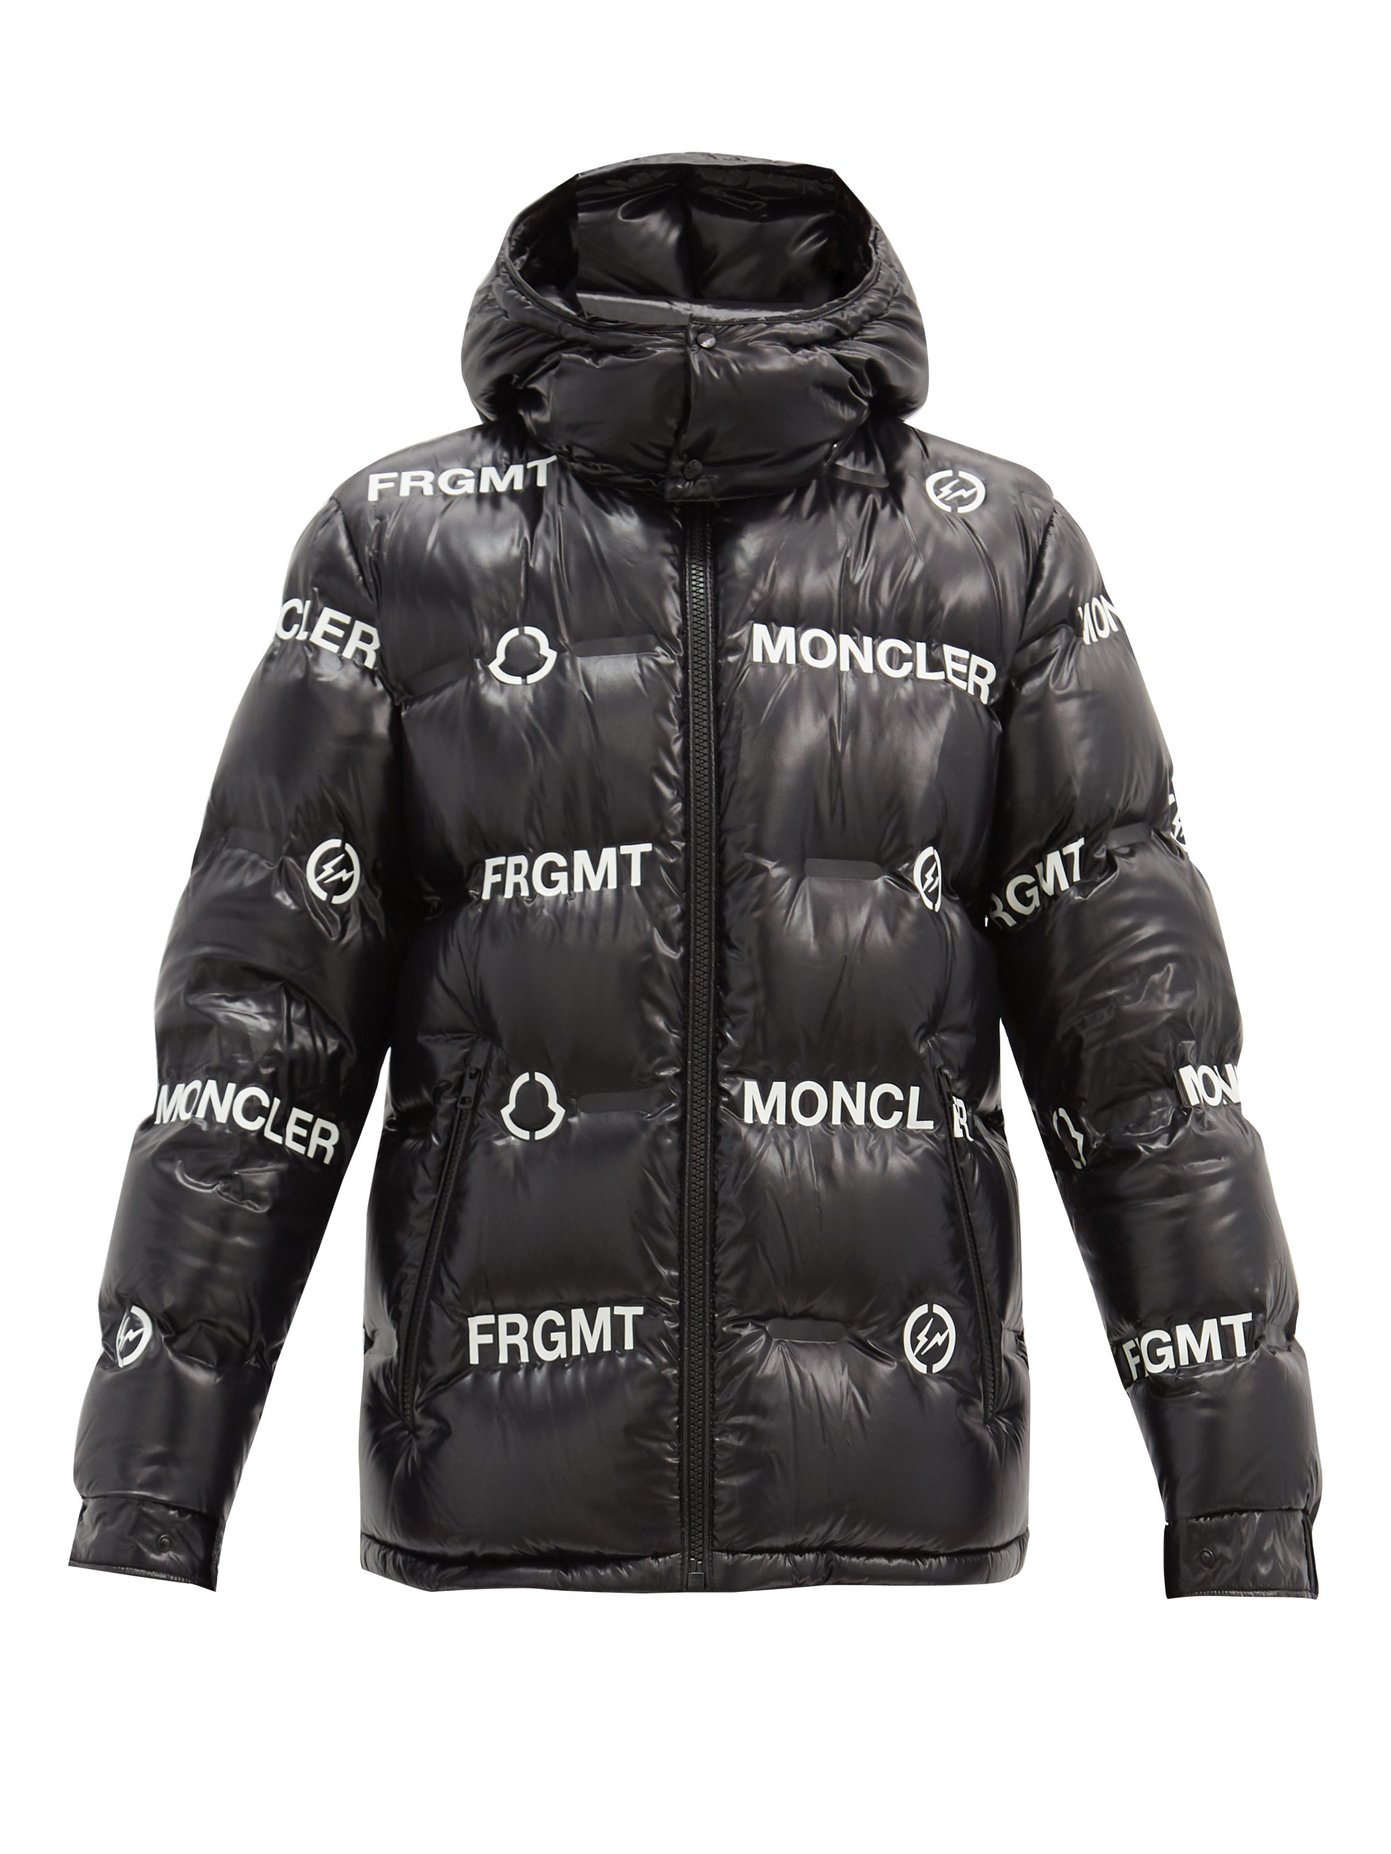 moncler logo jacket